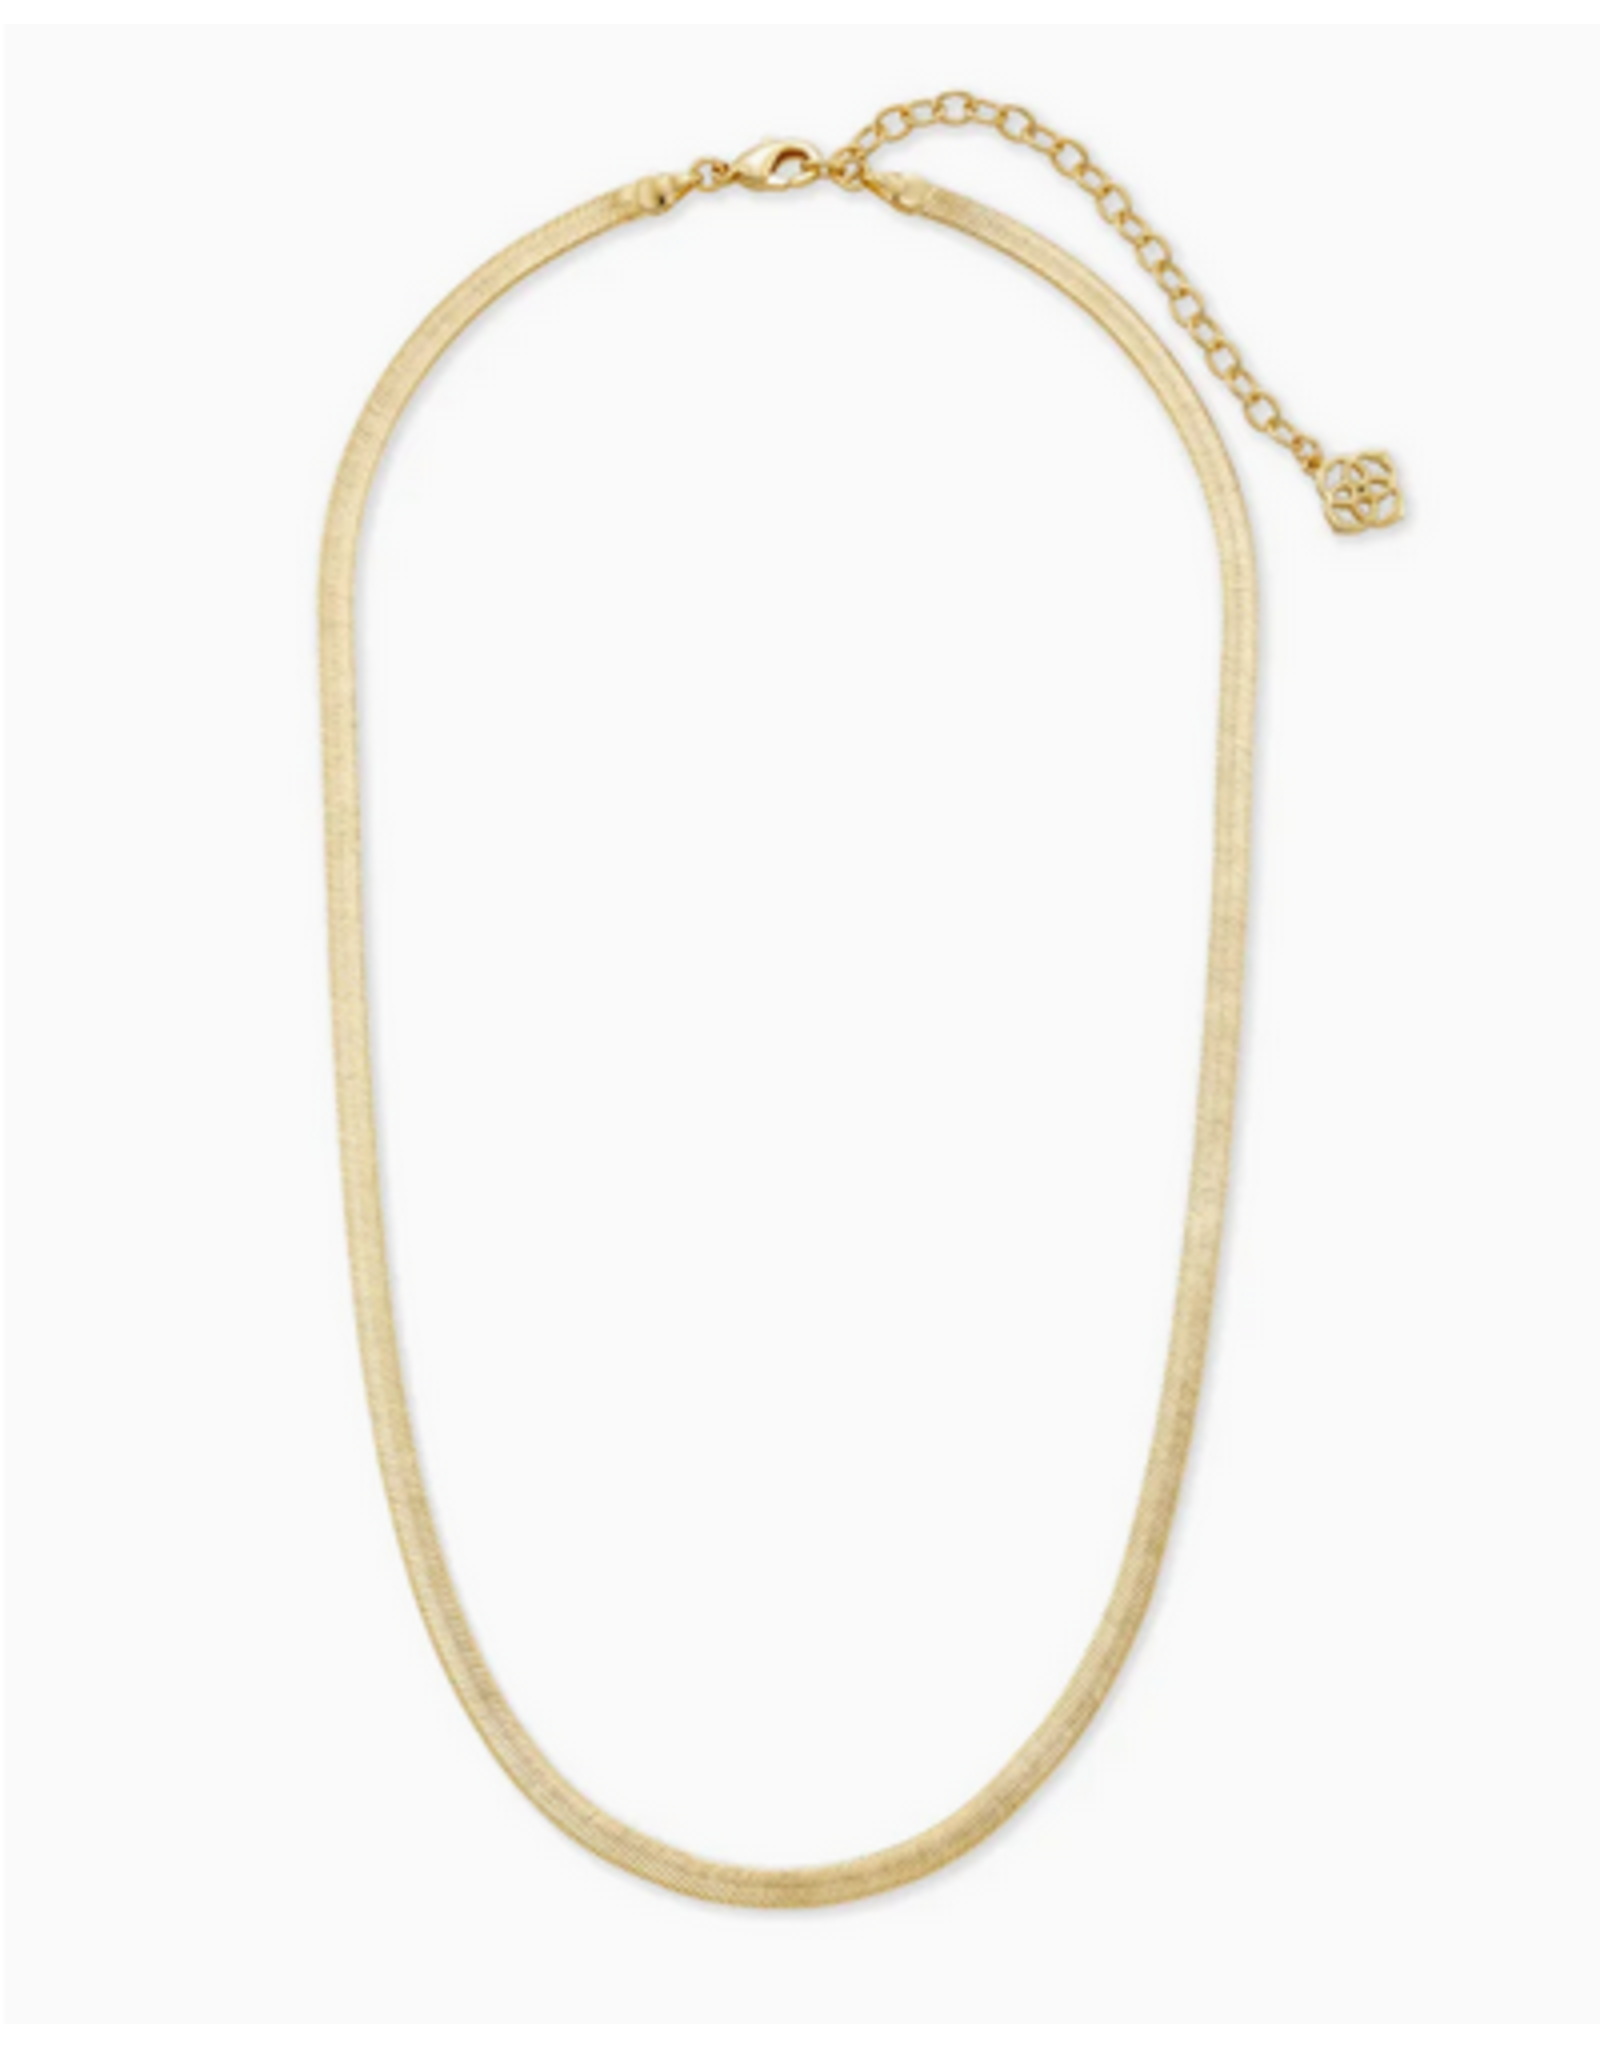 Kendra Scott Gold Kassie Chain Necklace